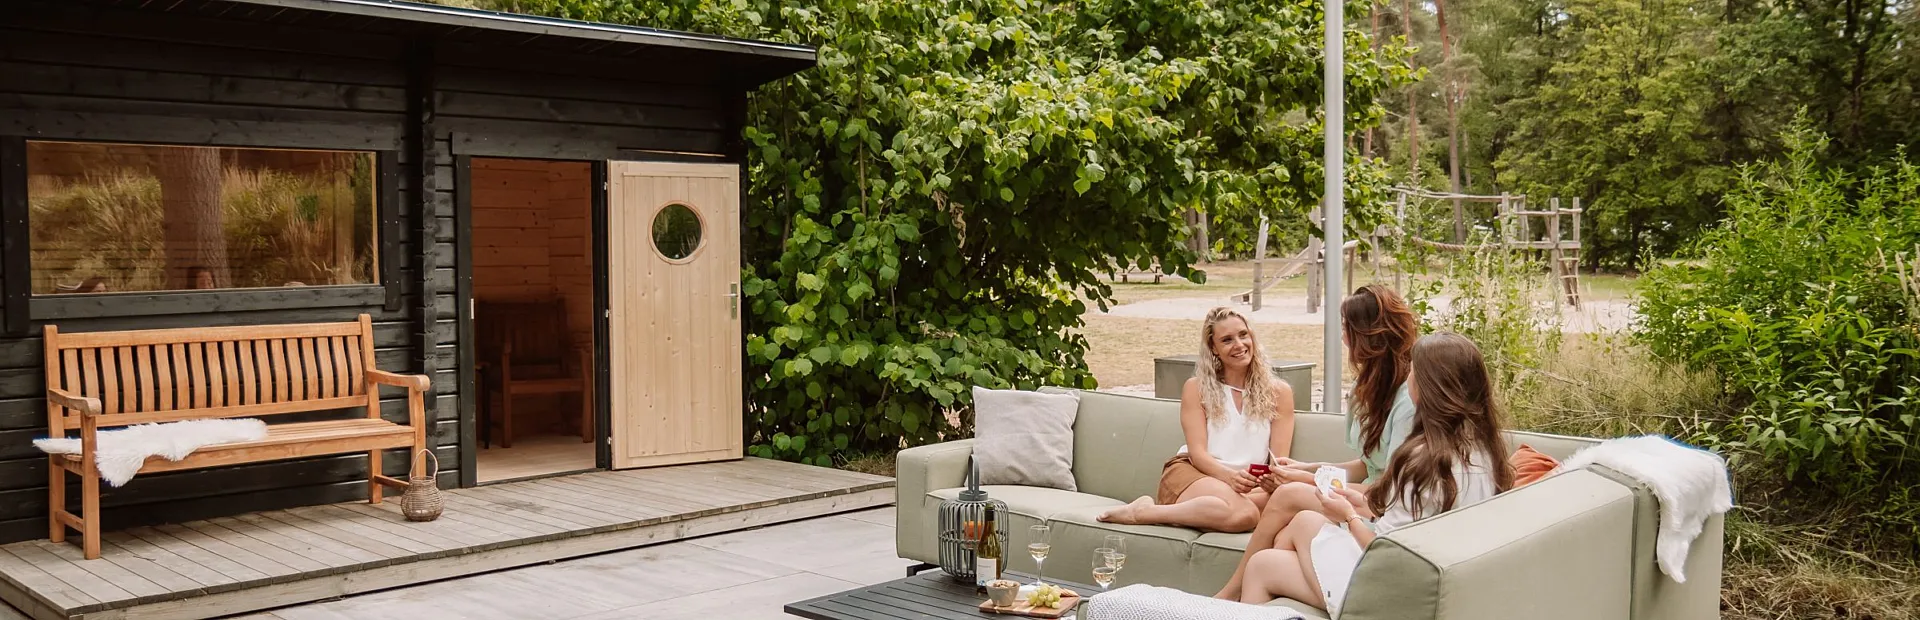 Huisje met sauna 11